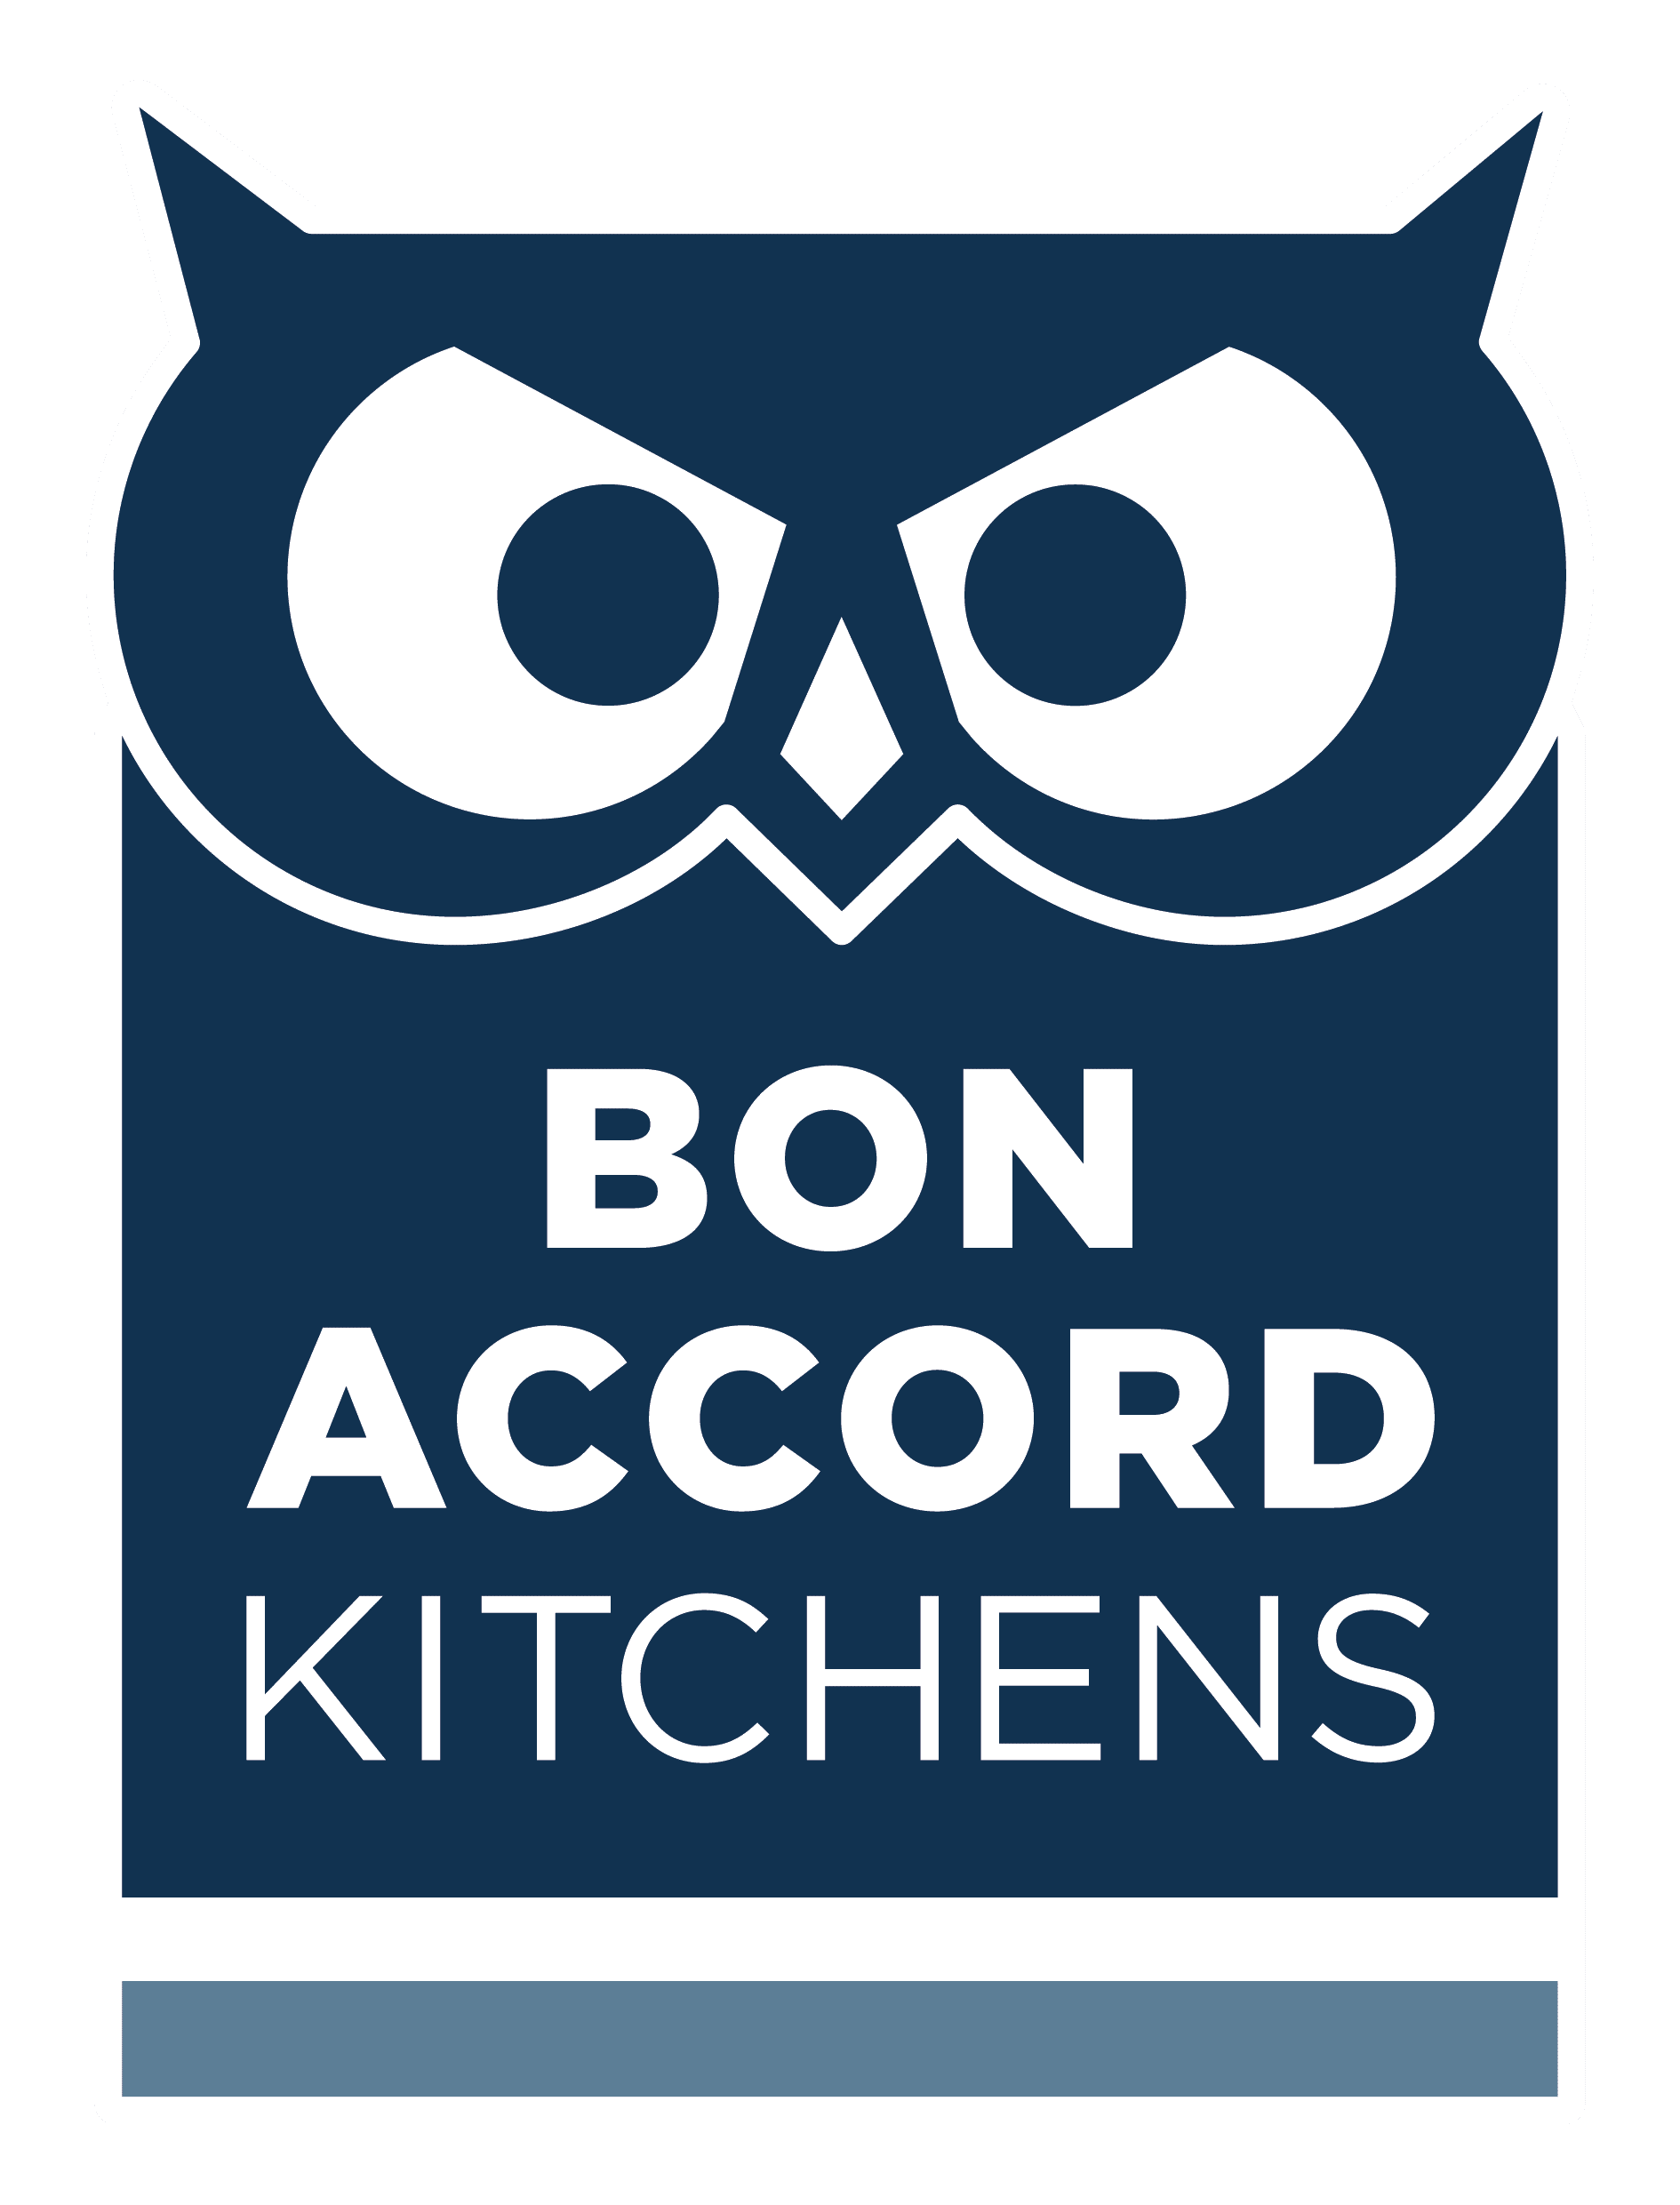 Bon Accord Kitchens in Aberdeen